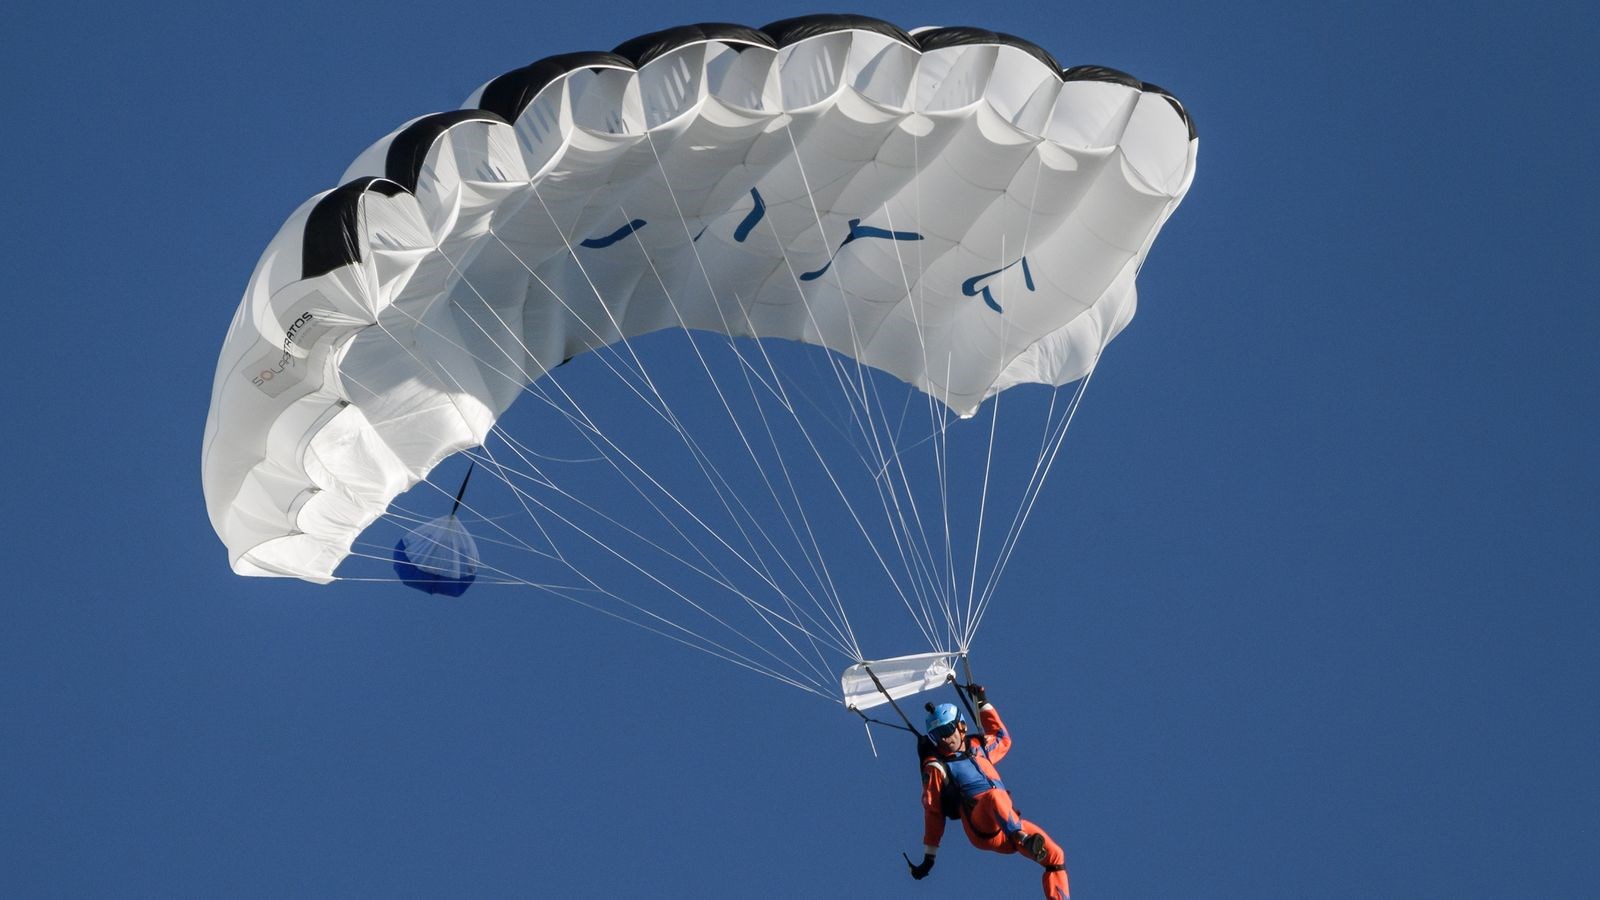 İsviçreli bir paraşütçü,  güneş enerjisiyle çalışan bir uçaktan atlayan ilk insan oldu